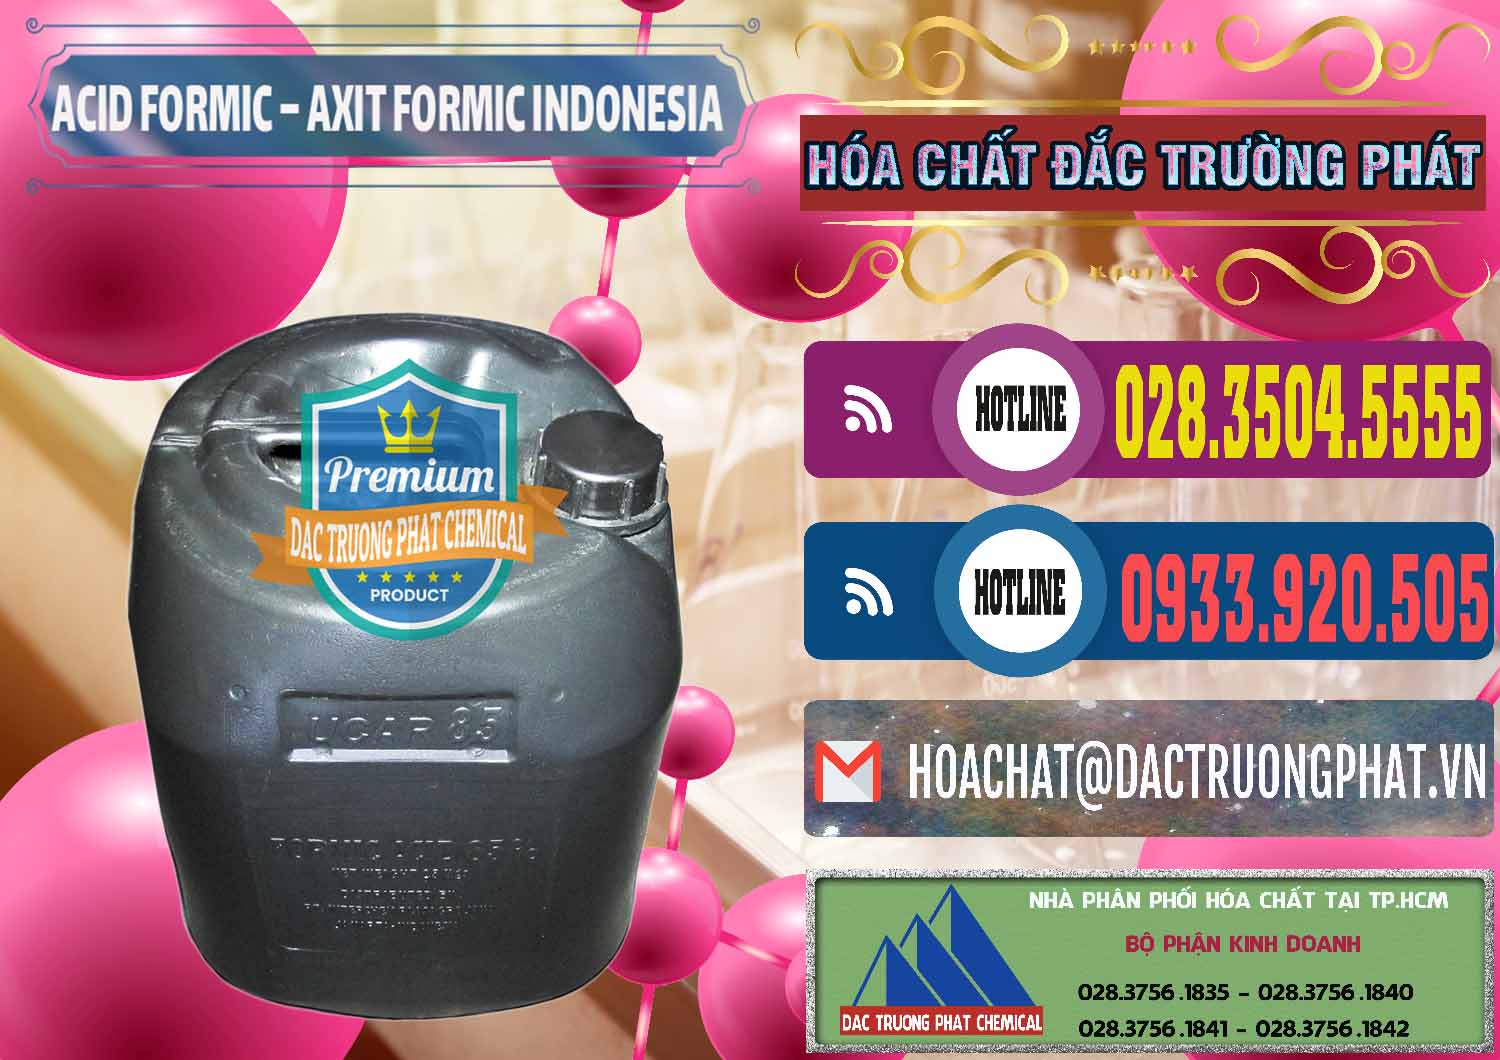 Công ty chuyên bán & phân phối Acid Formic - Axit Formic Indonesia - 0026 - Nhà cung cấp và phân phối hóa chất tại TP.HCM - muabanhoachat.com.vn